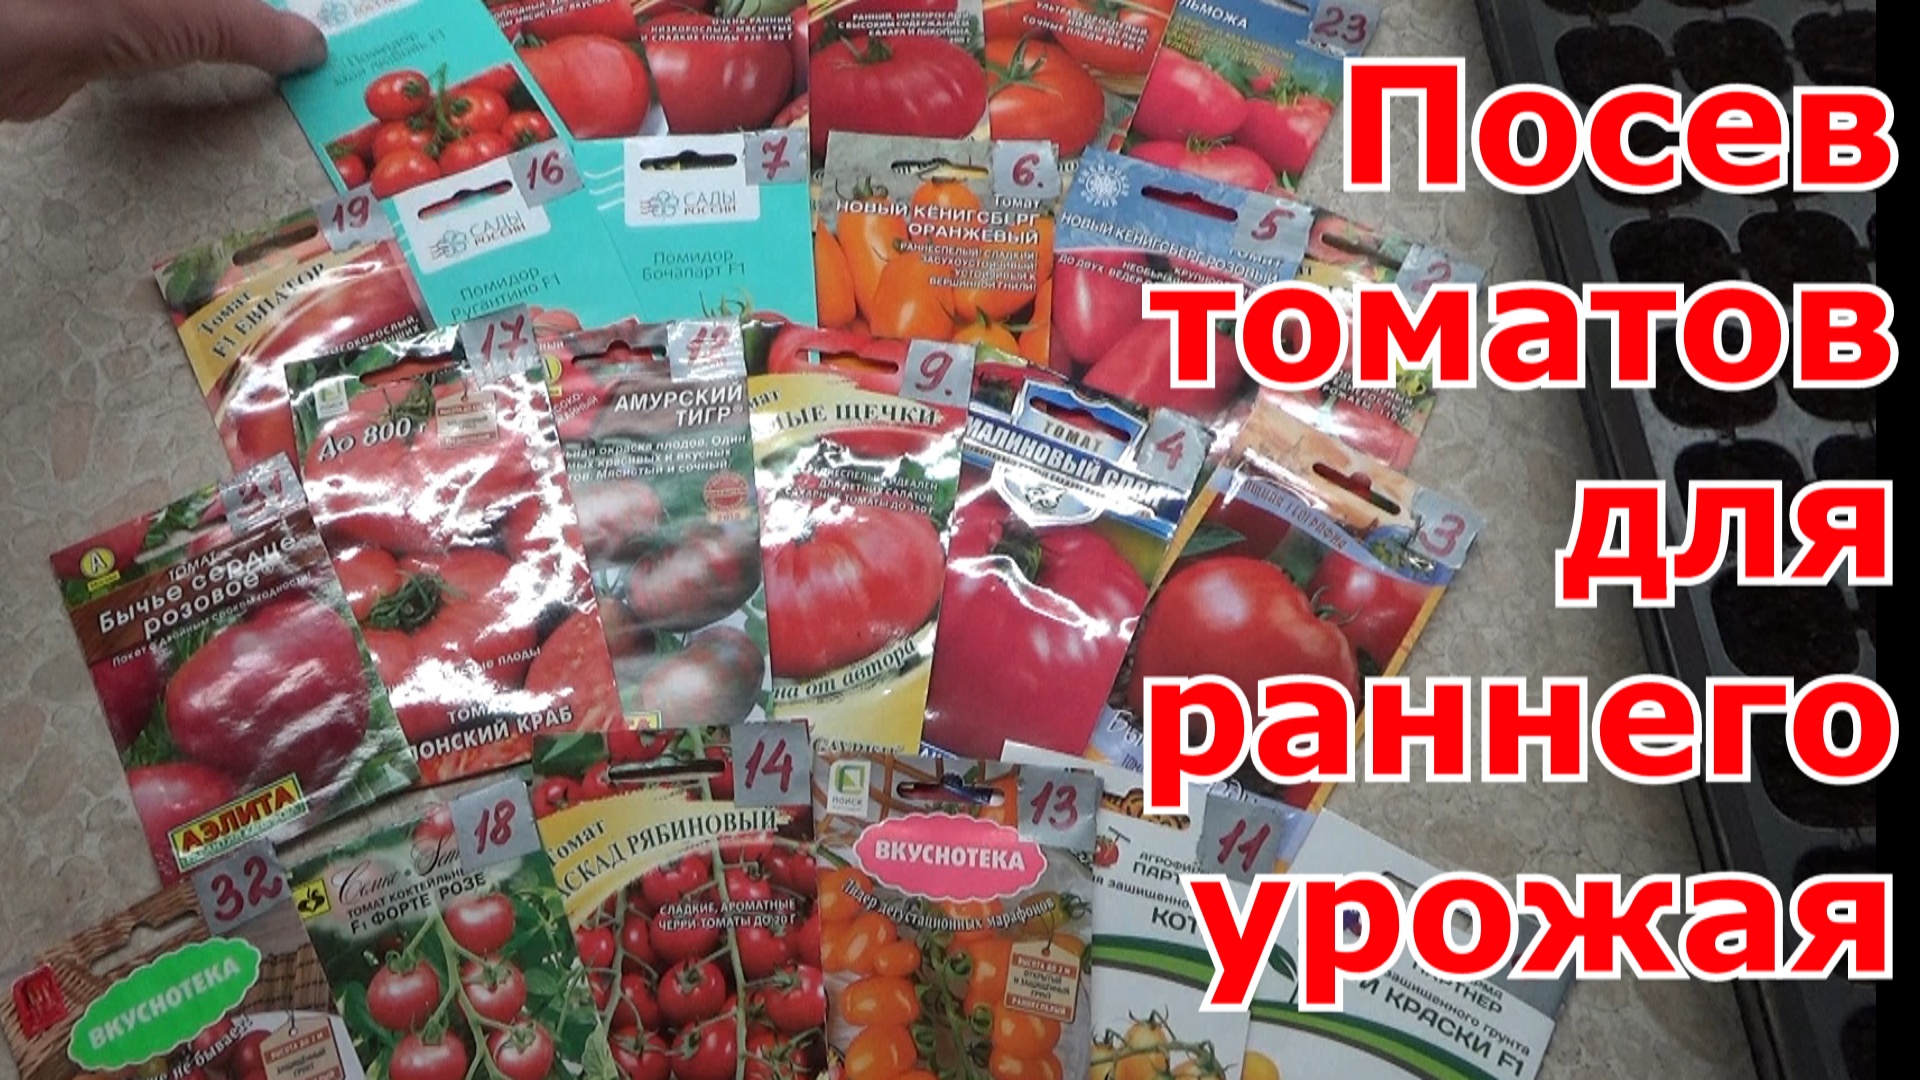 Посев томатов для раннего урожая. Какие сорта томатов выбрала для первого посева томатов.